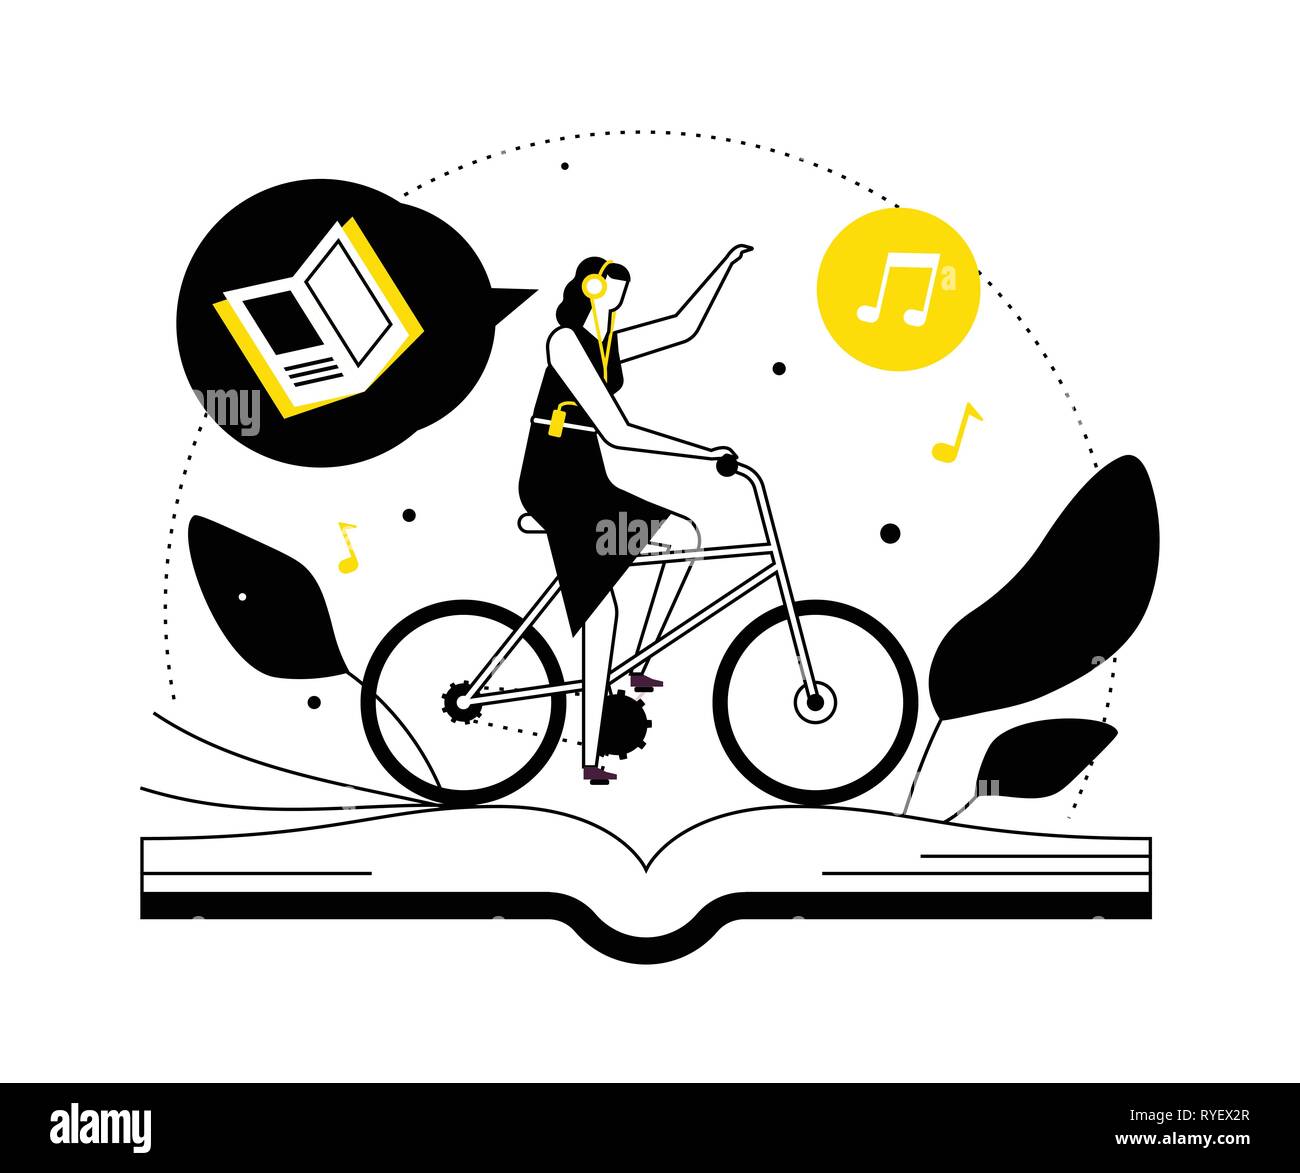 Das Hören von Hörbüchern - flaches Design Illustration Stock Vektor